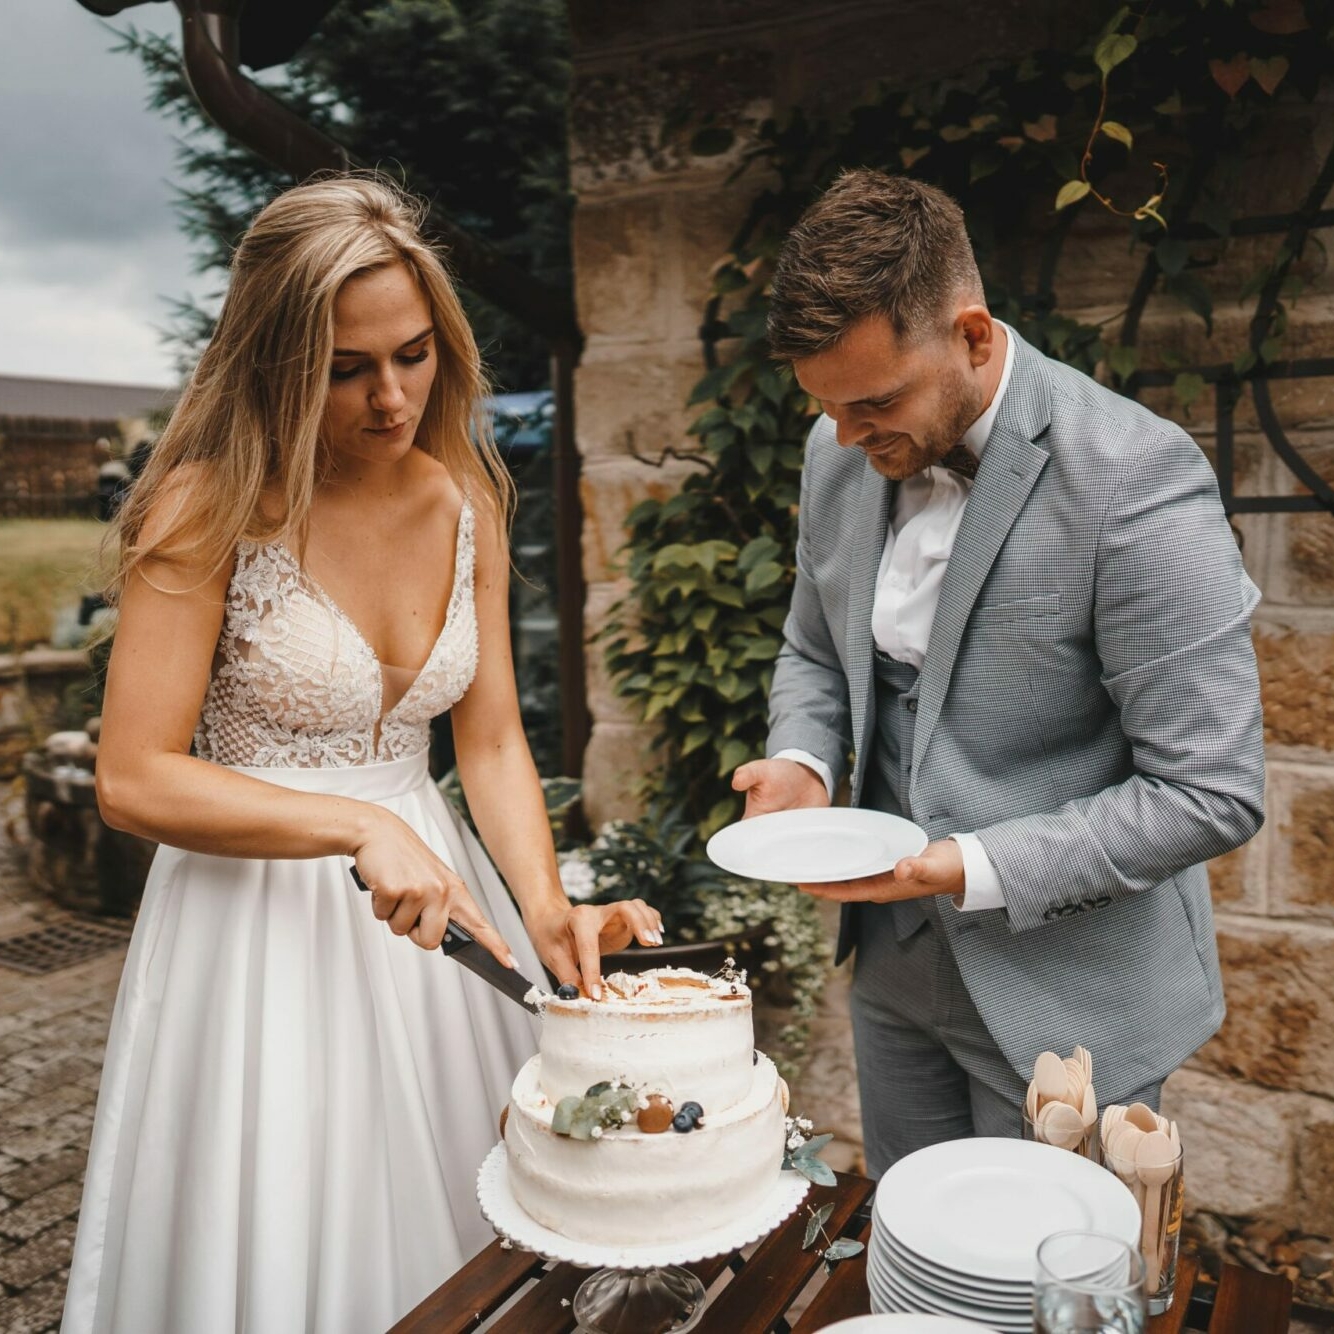 krájení svatebního dortu